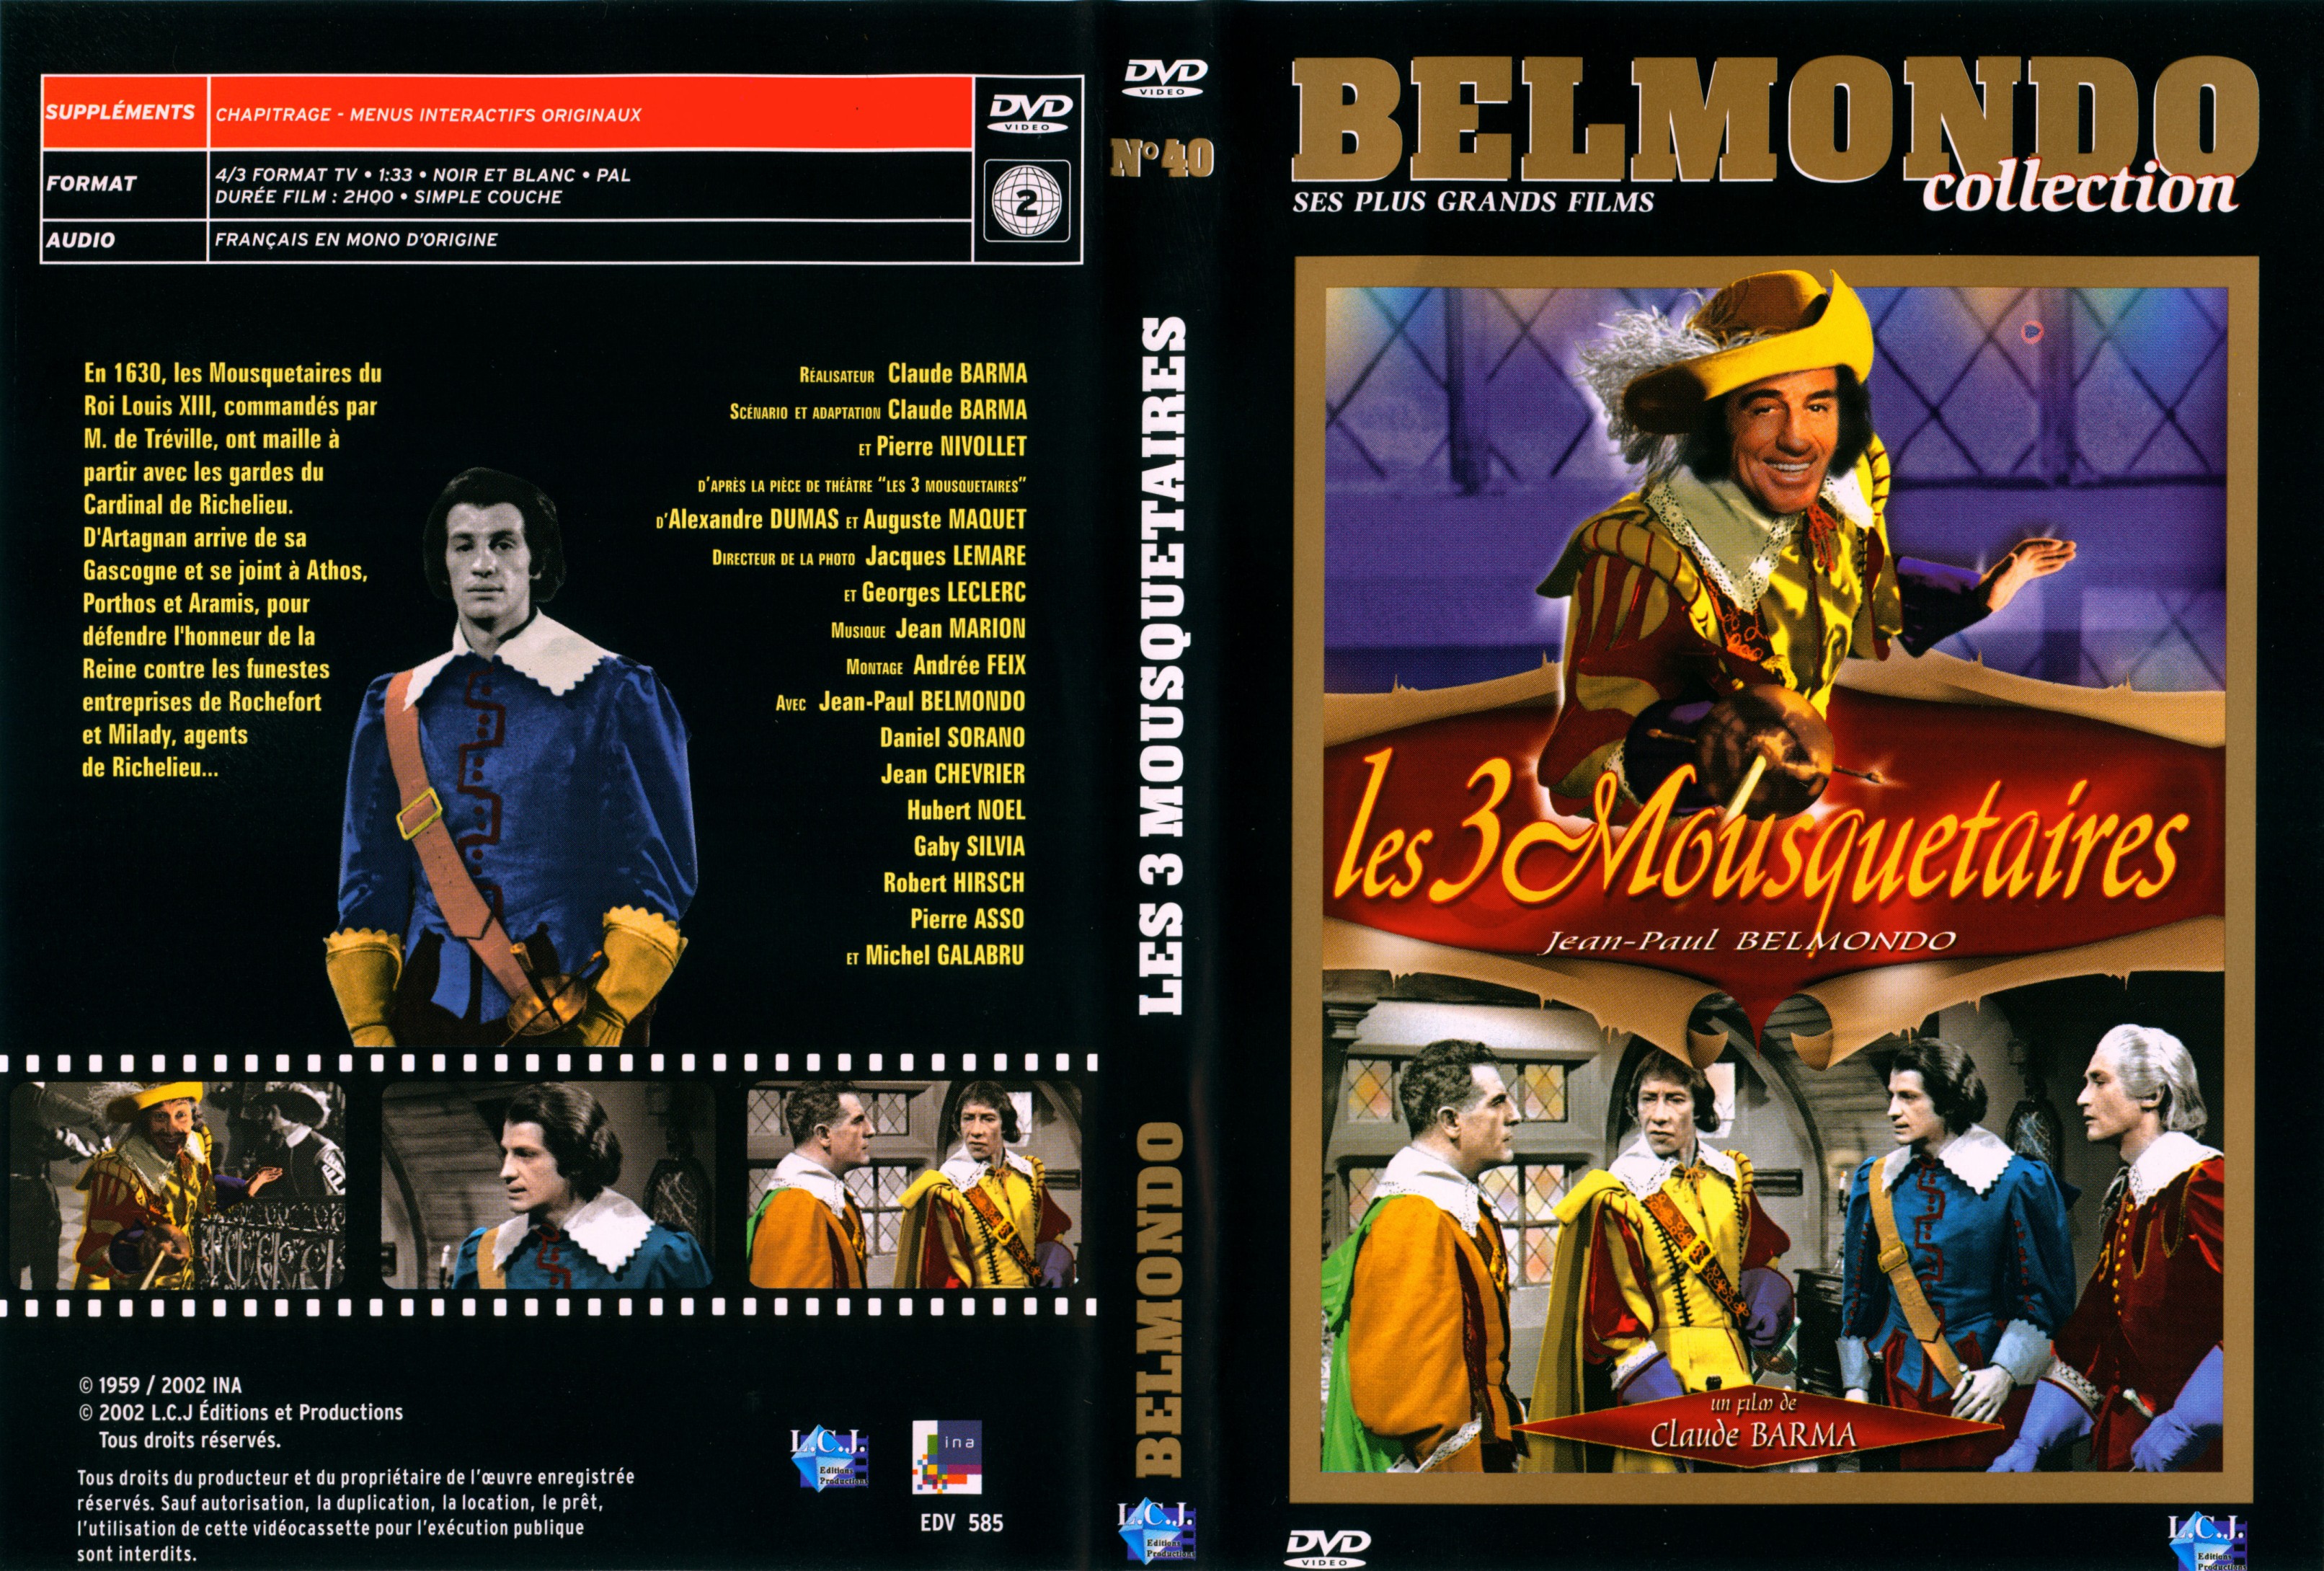 Jaquette DVD Les trois mousquetaires (Belmondo) v2